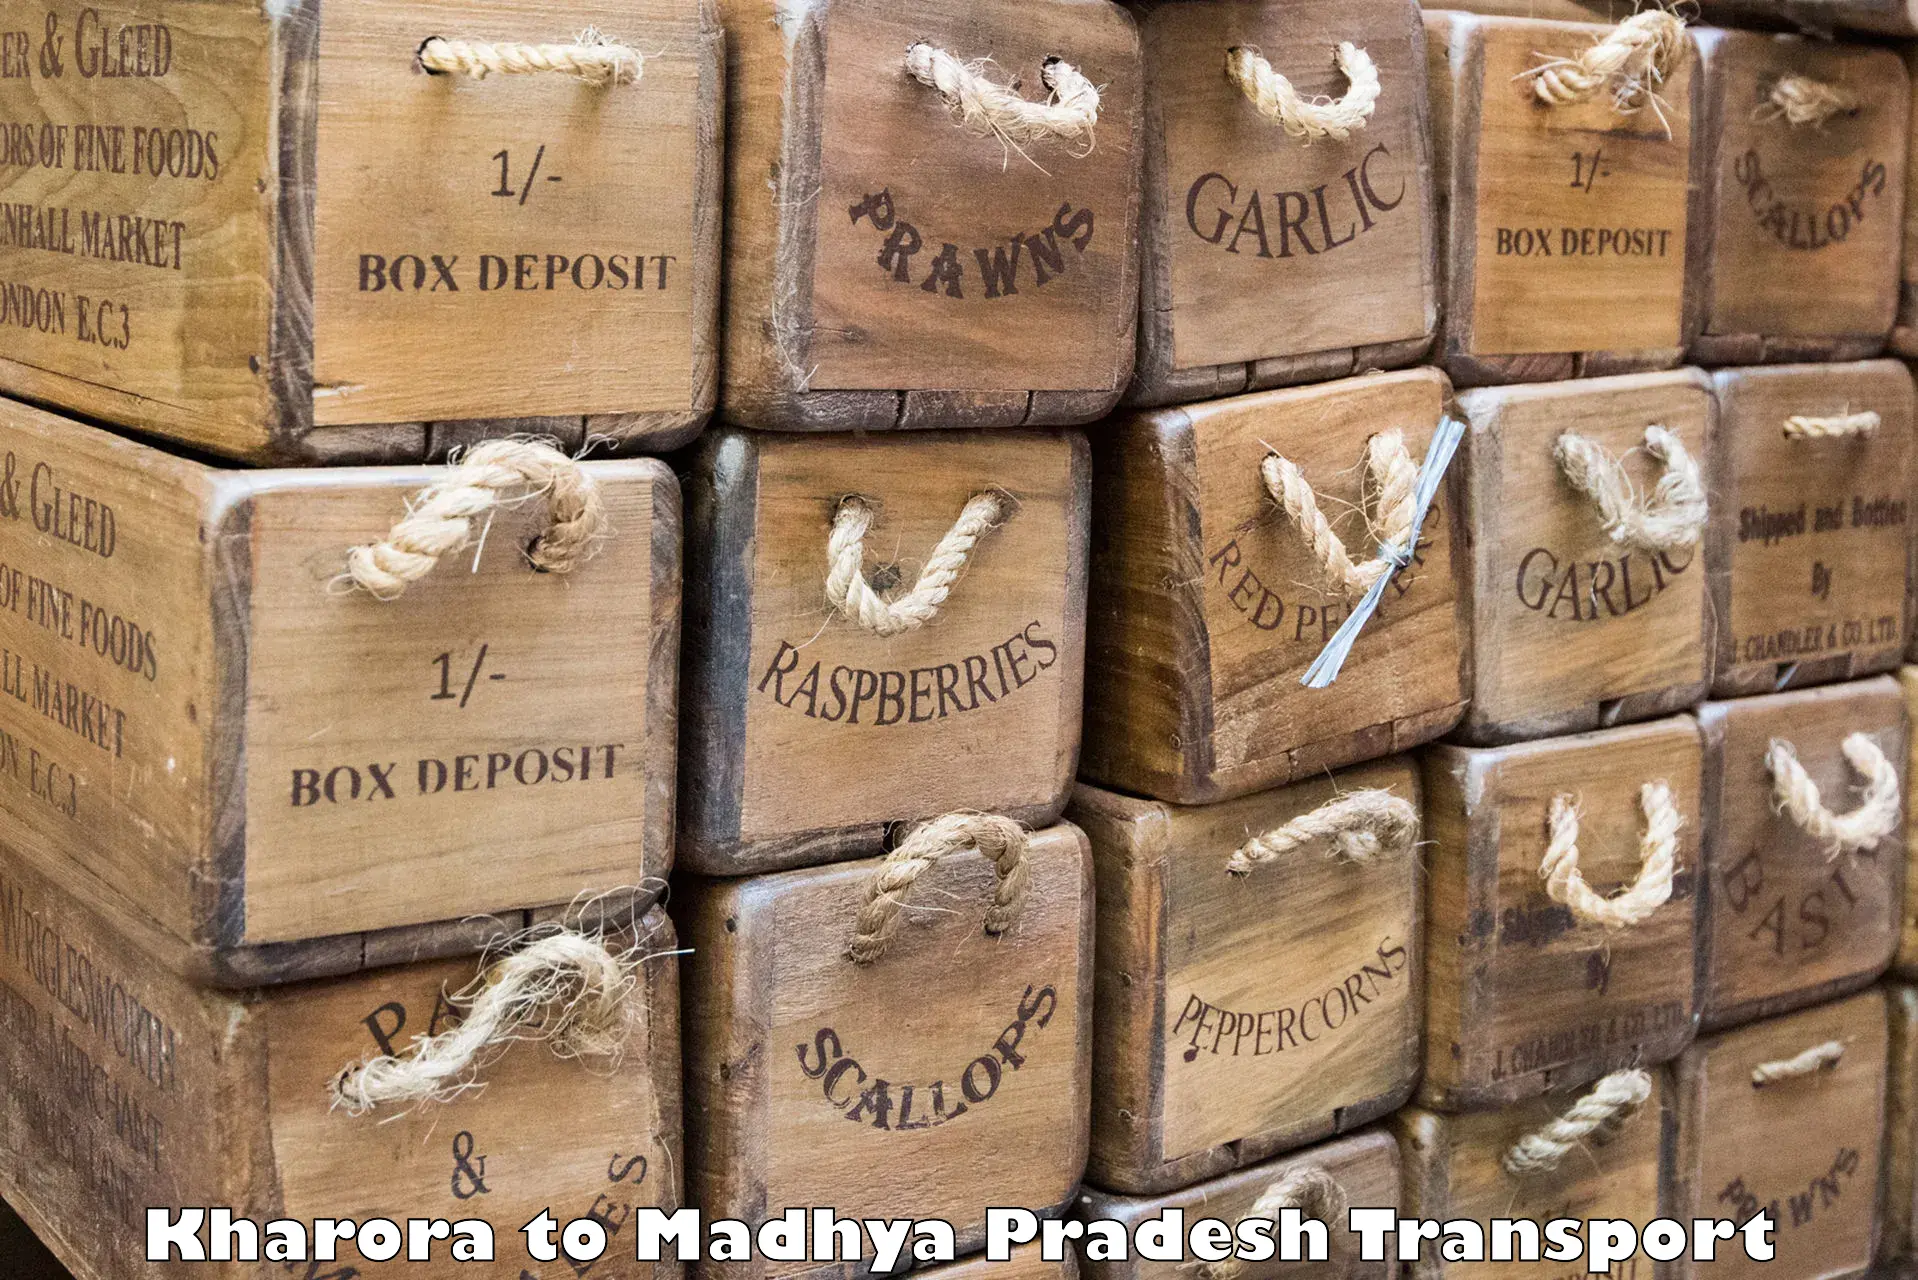 Truck transport companies in India Kharora to Madhya Pradesh